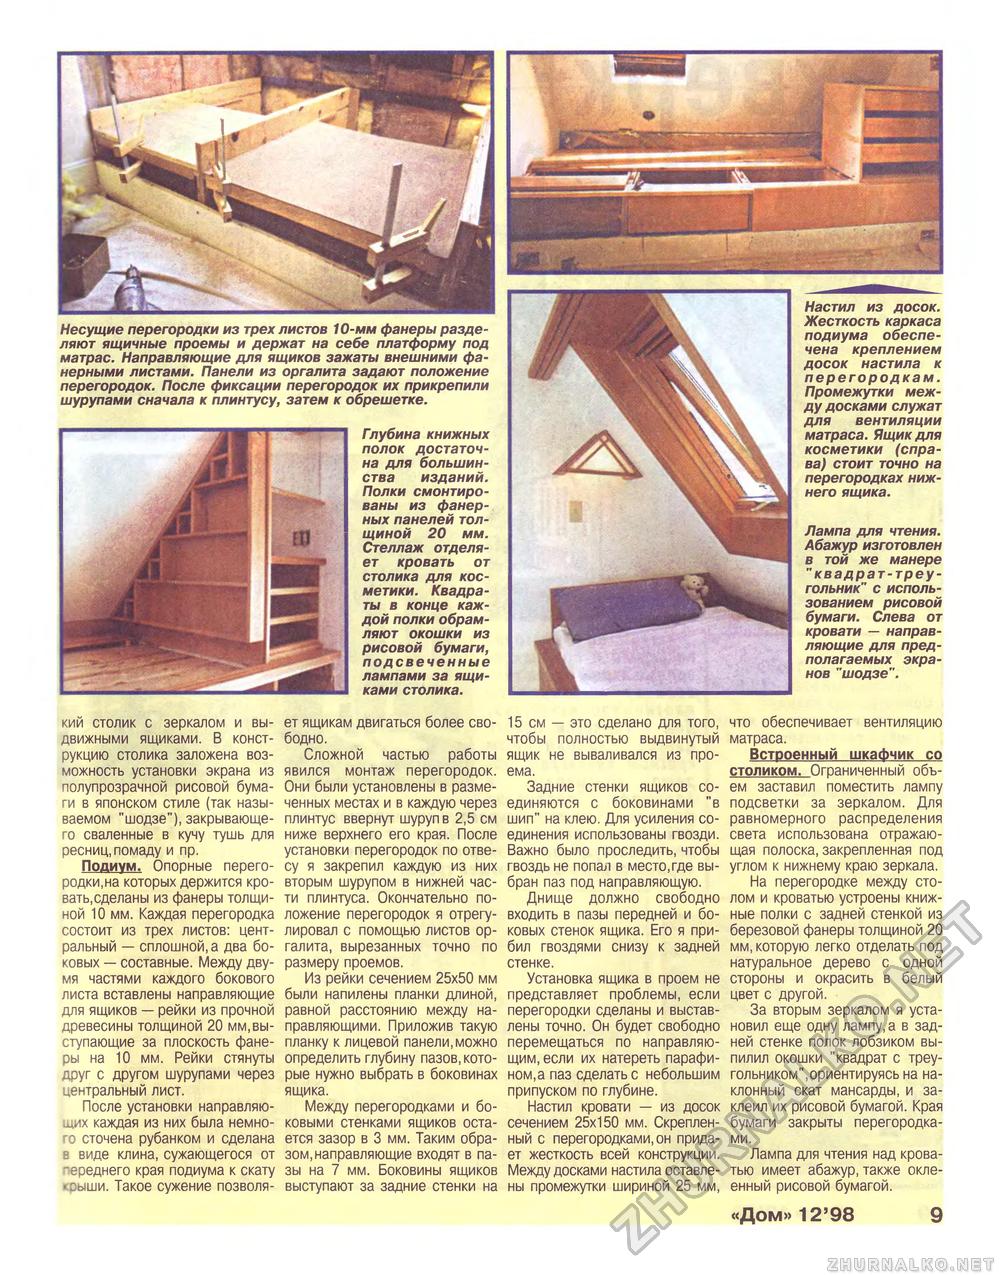 Дом 1998-12, страница 9